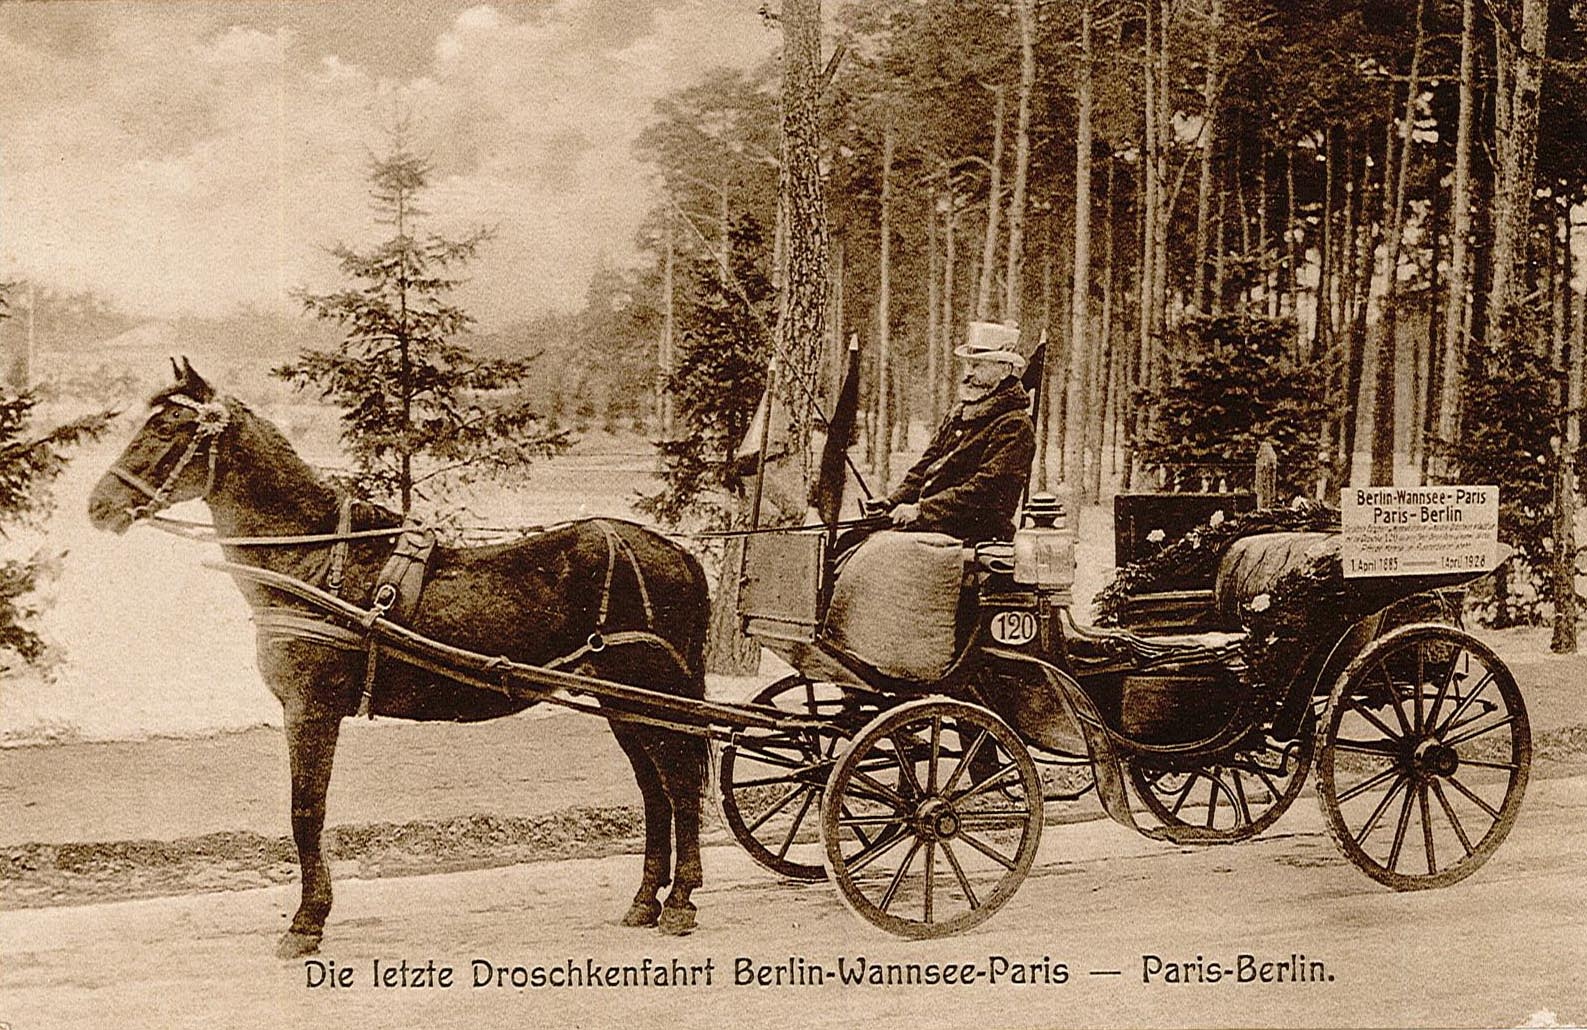 Postkarte, Motiv: Letzte Droschkenfahrt Berlin-Wannsee-Paris - Paris-Berlin, 1928 (Museum Wolmirstedt RR-F)